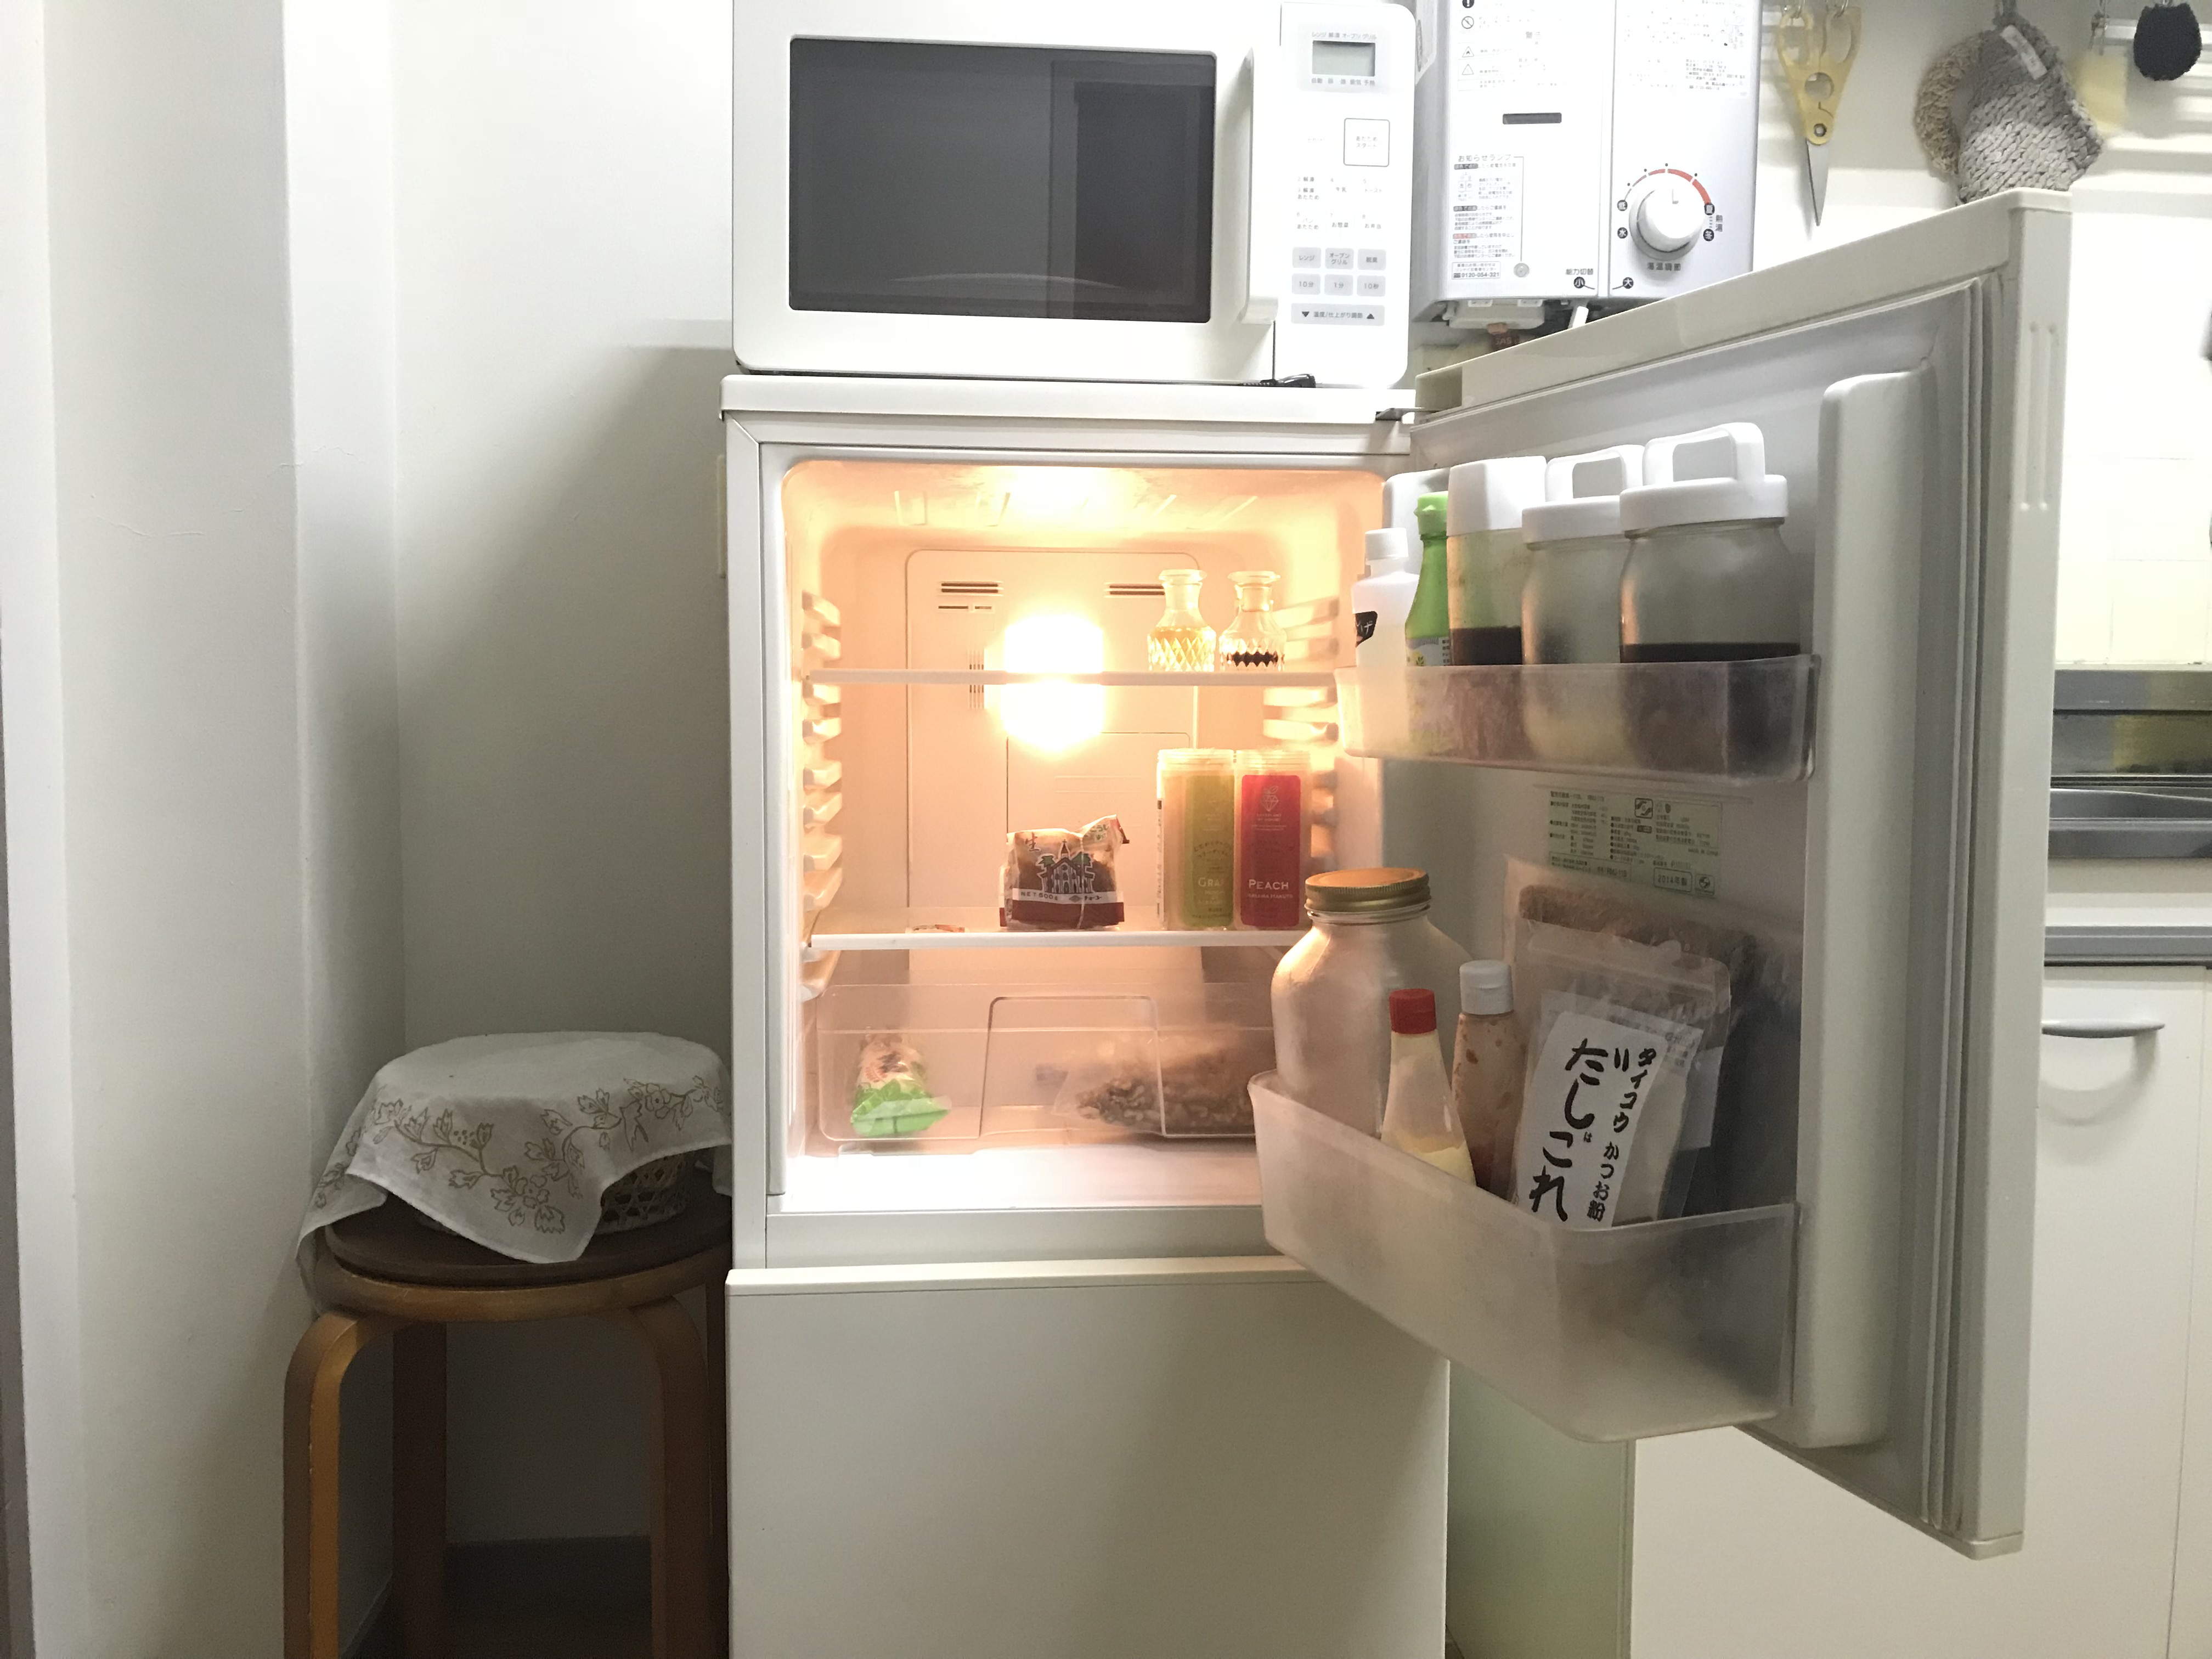 月末 外出前の冷蔵庫リセット ミニマムな暮らし 1ldk